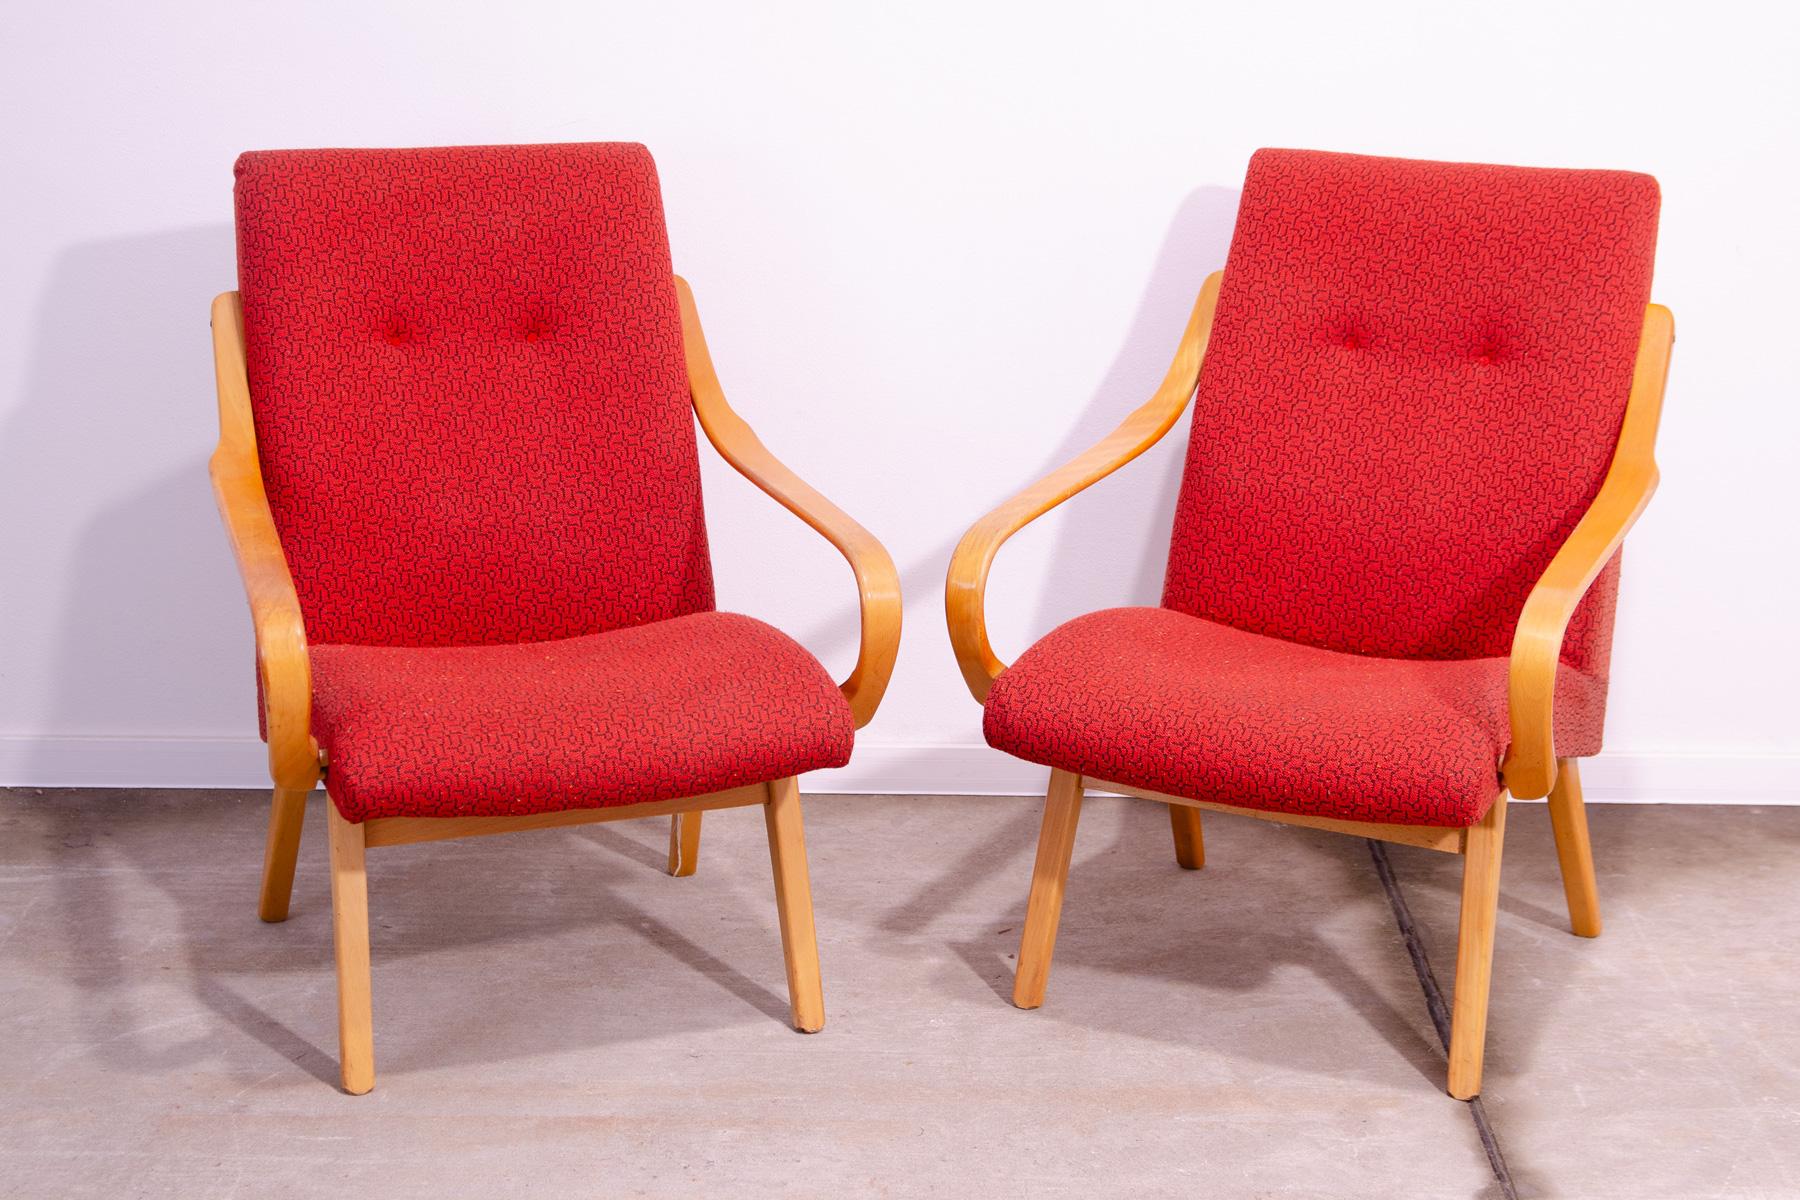 Ces fauteuils en bois courbé ont été conçus par Jaroslav Šmídek et fabriqués par la société Jitona dans l'ancienne Tchécoslovaquie dans les années 1960.

Les chaises sont stables et confortables. Ceux-ci sont en bon état Vintage, montrent de légers